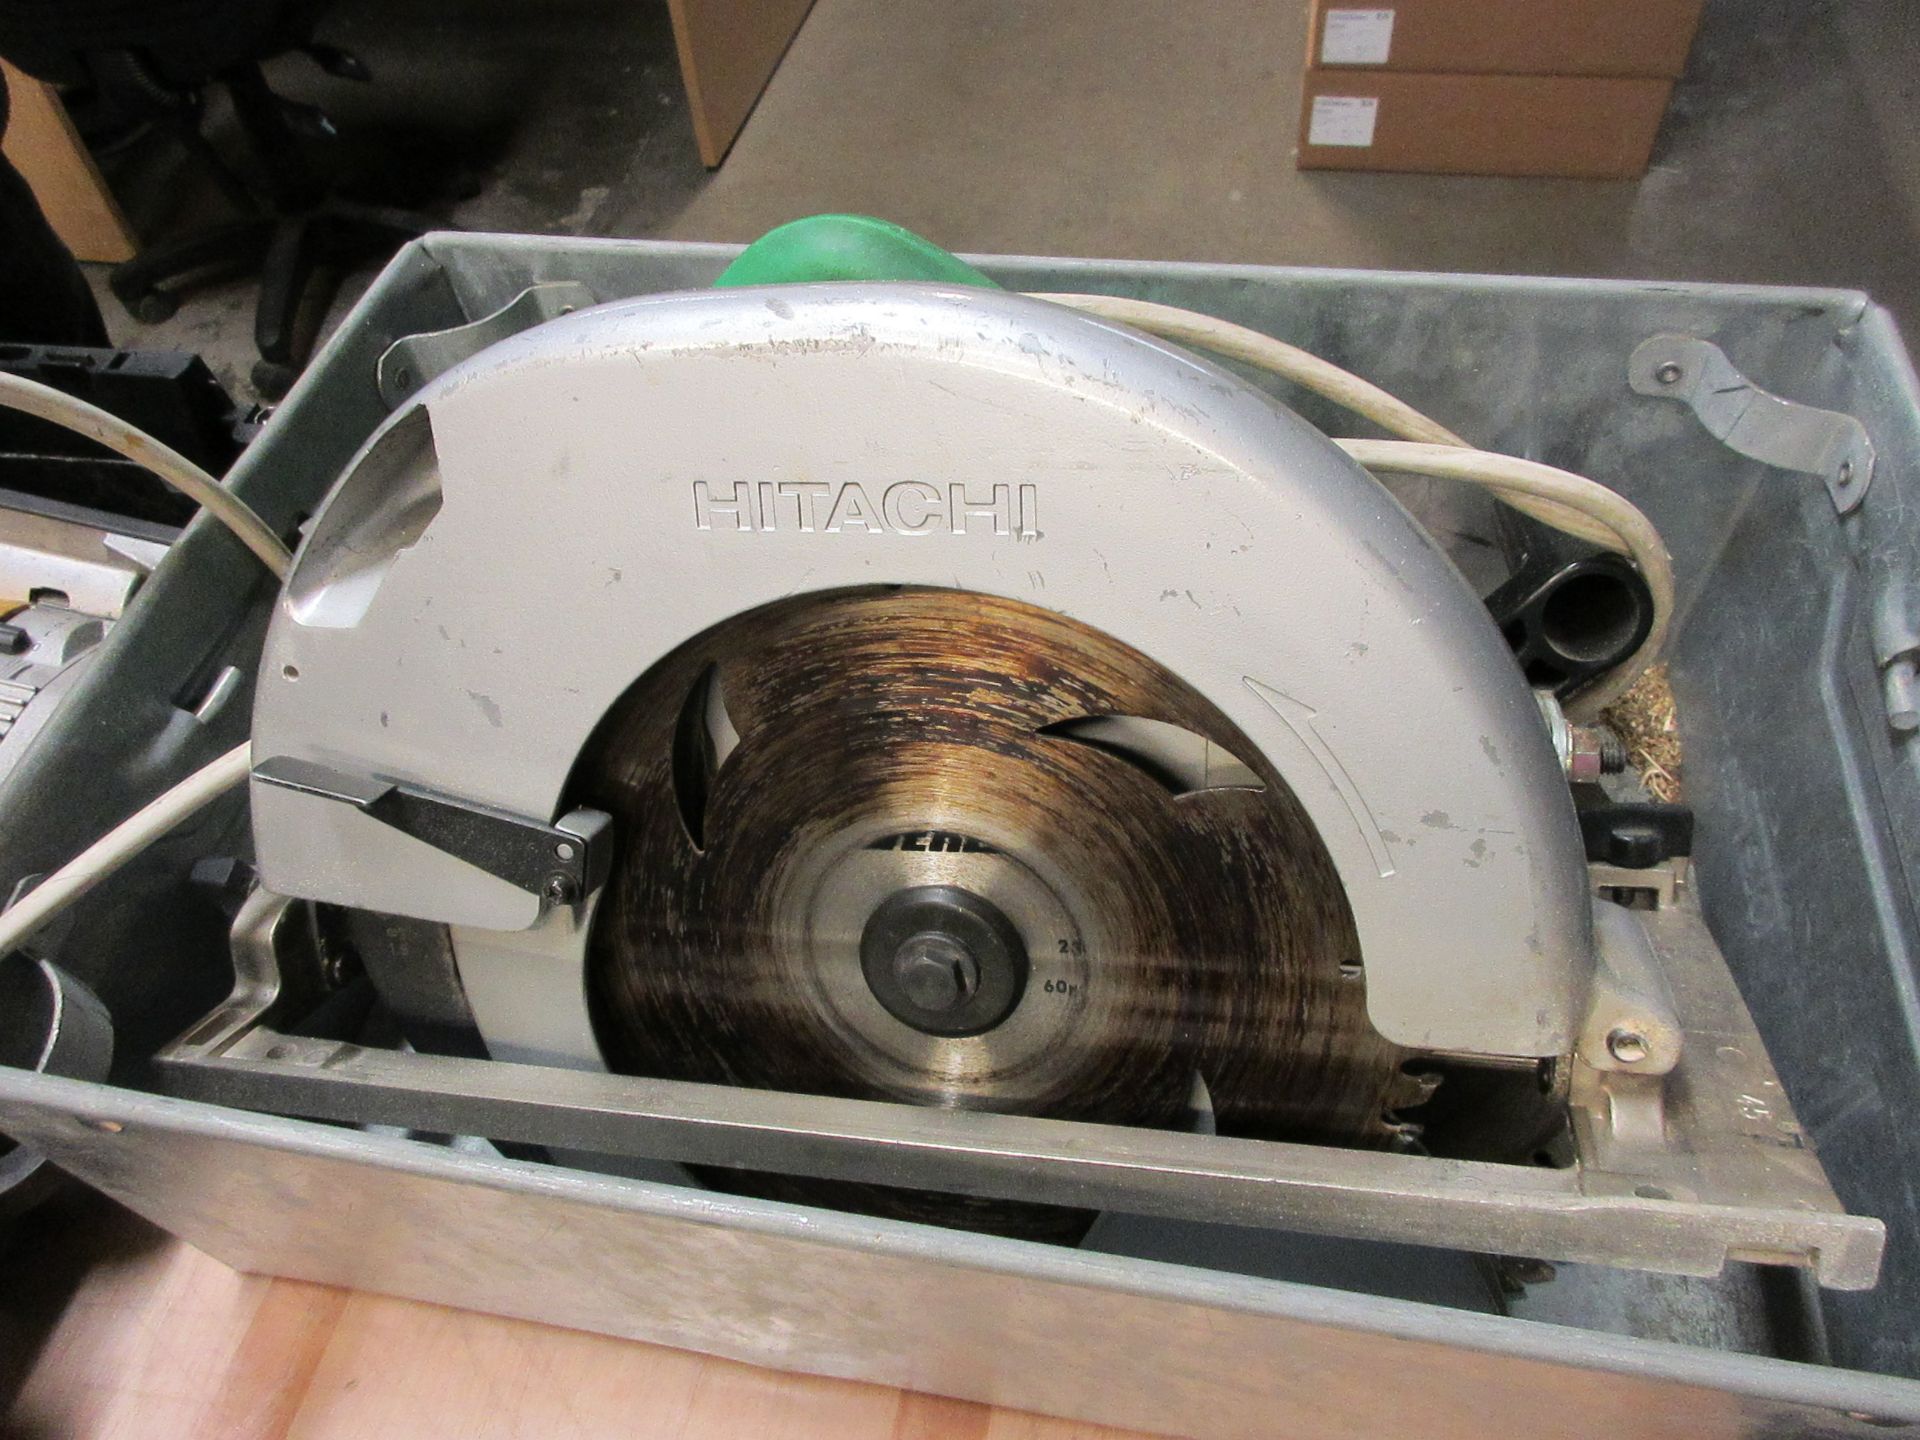 Hitachi C9U circular saw, 240v